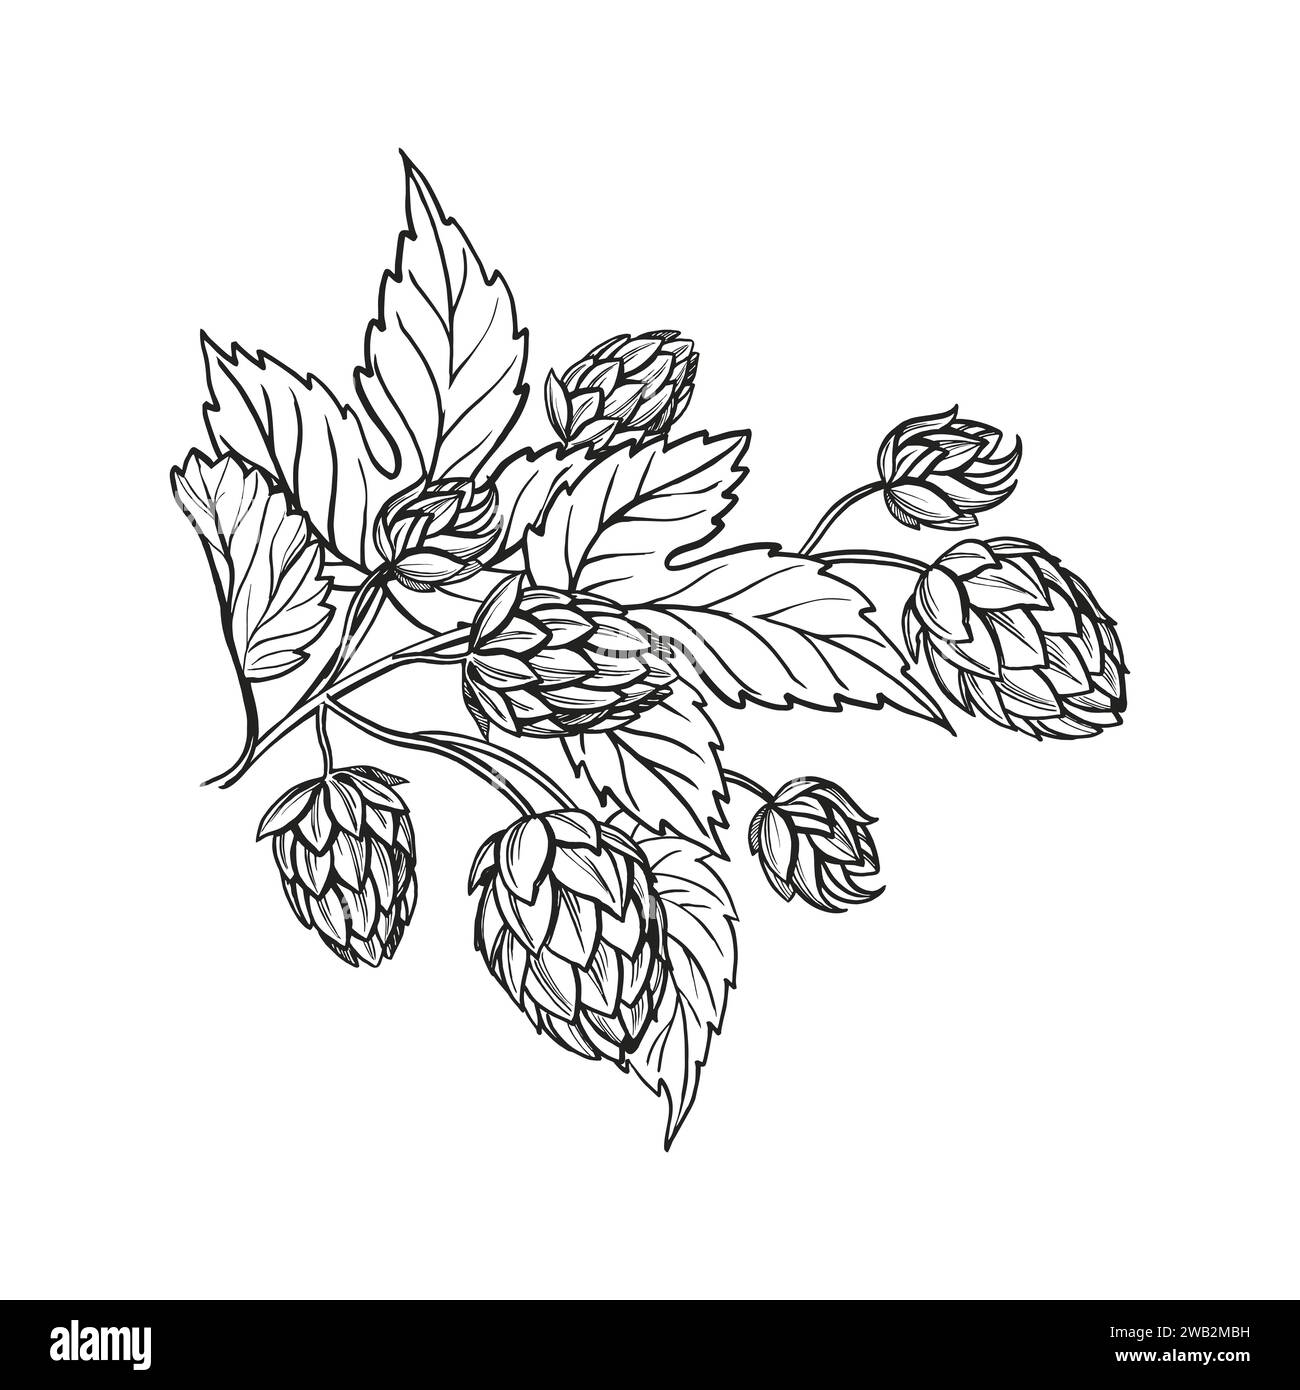 Croquis vectoriel dessiné à la main de plante de houblon avec des feuilles et des bourgeons, ingrédients de bière artisanale, illustration en noir et blanc de branche humulus lupulus, illu encré Illustration de Vecteur